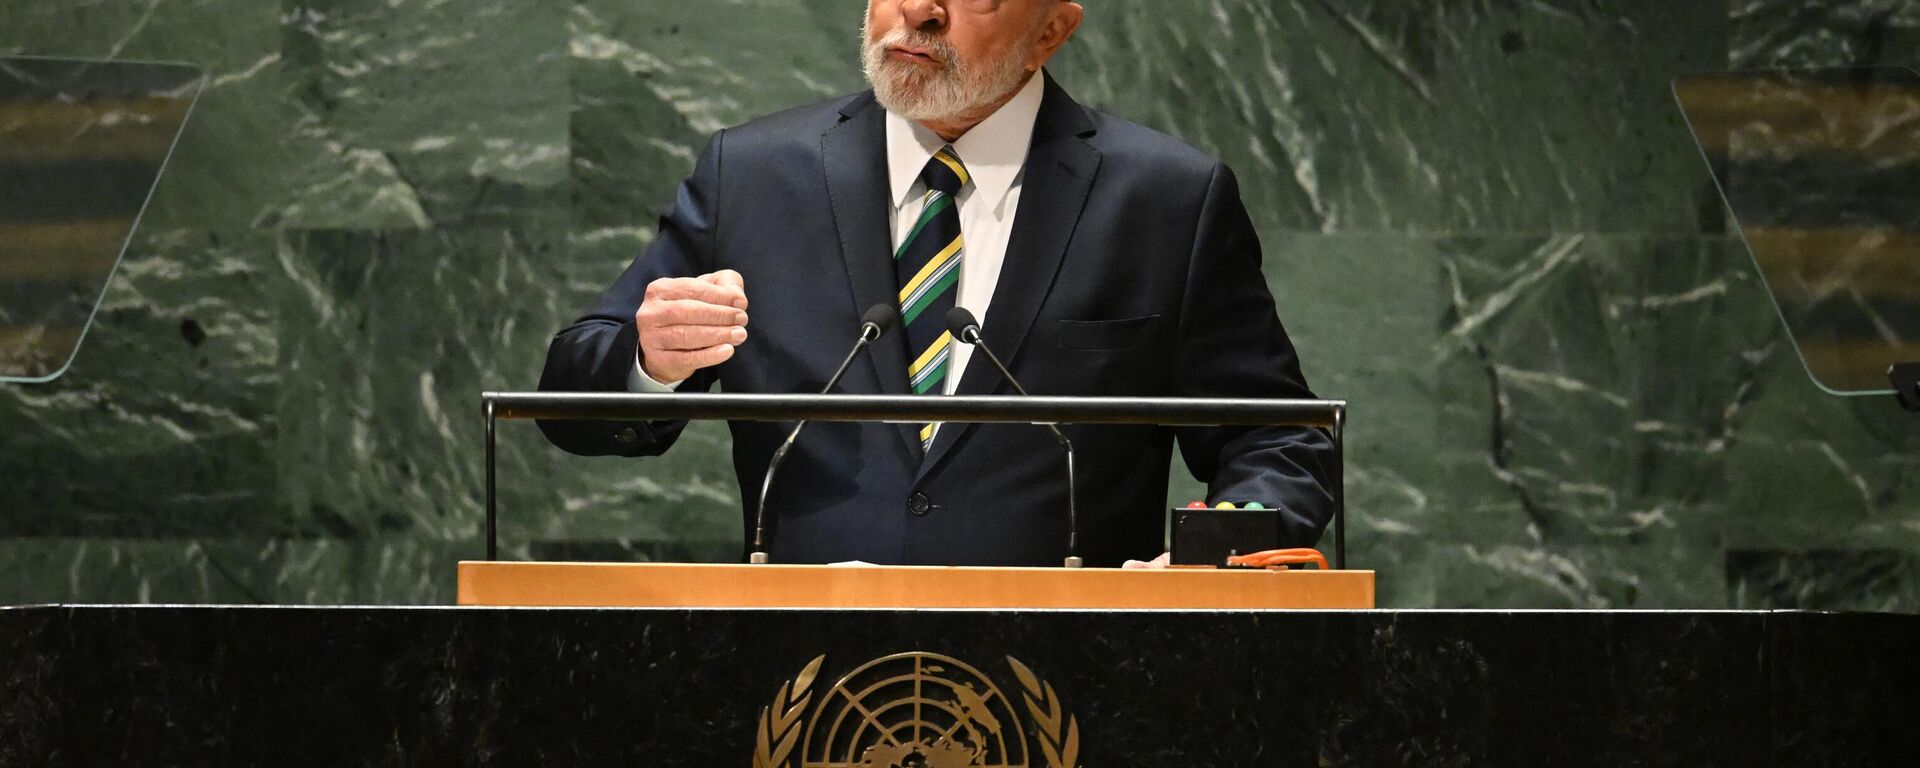 O presidente brasileiro Luiz Inácio Lula da Silva discursa na 78ª Assembleia Geral das Nações Unidas na sede da ONU na cidade de Nova York, 19 de setembro de 2023 - Sputnik Brasil, 1920, 19.09.2023